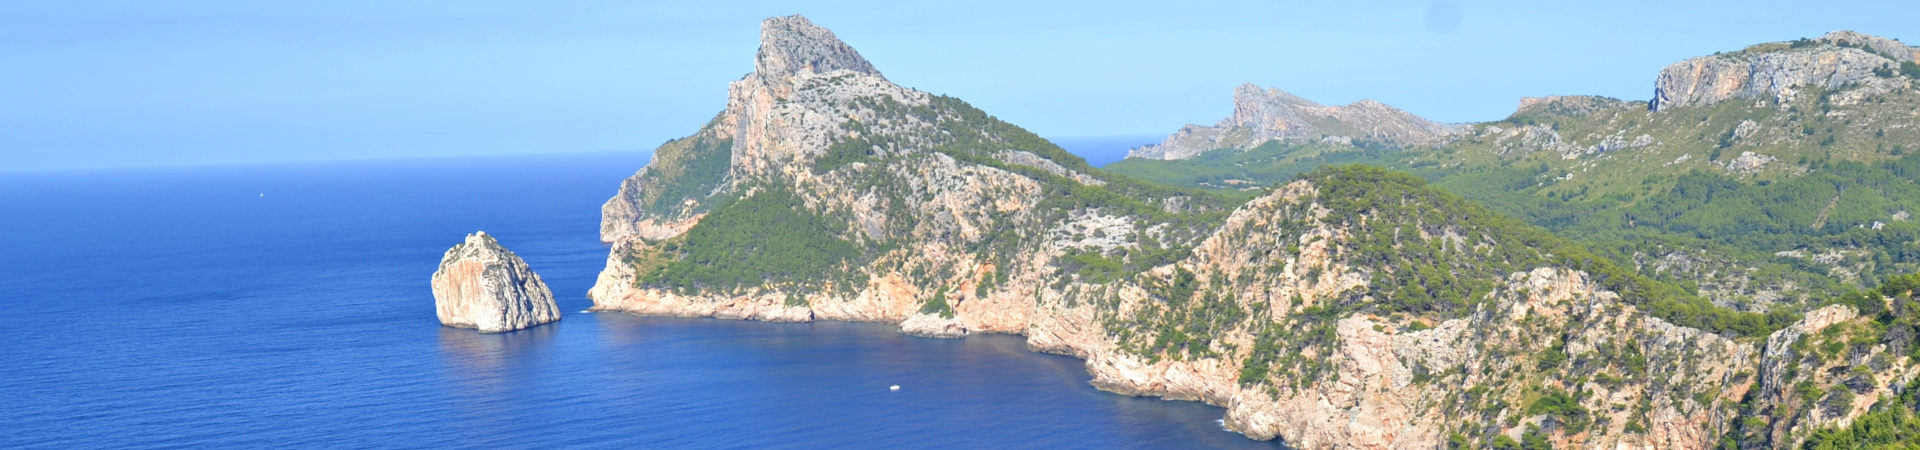 Imagen recurso del puerto de destino Mallorca (Palma) para la ruta en ferry Denia - Mallorca (Palma)